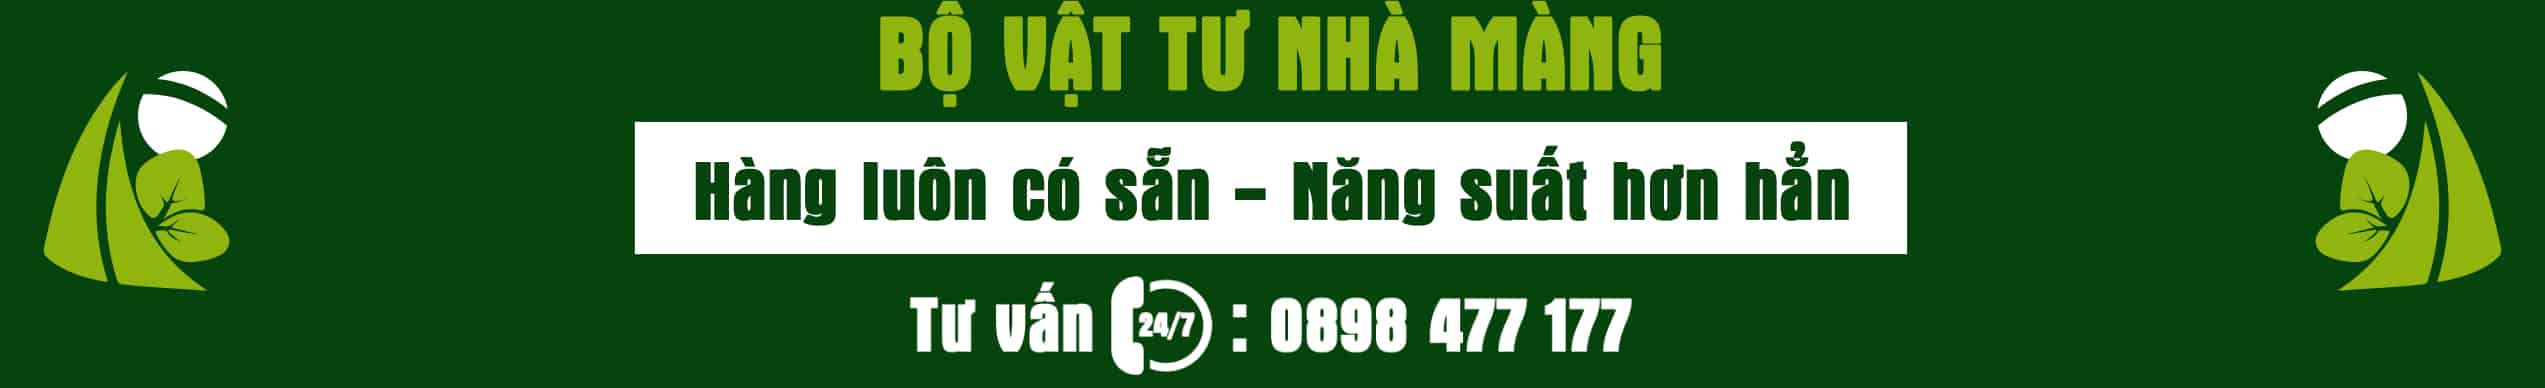 Bo-vat-tu-nha-mang-Thuy-Canh-Mien-Nam